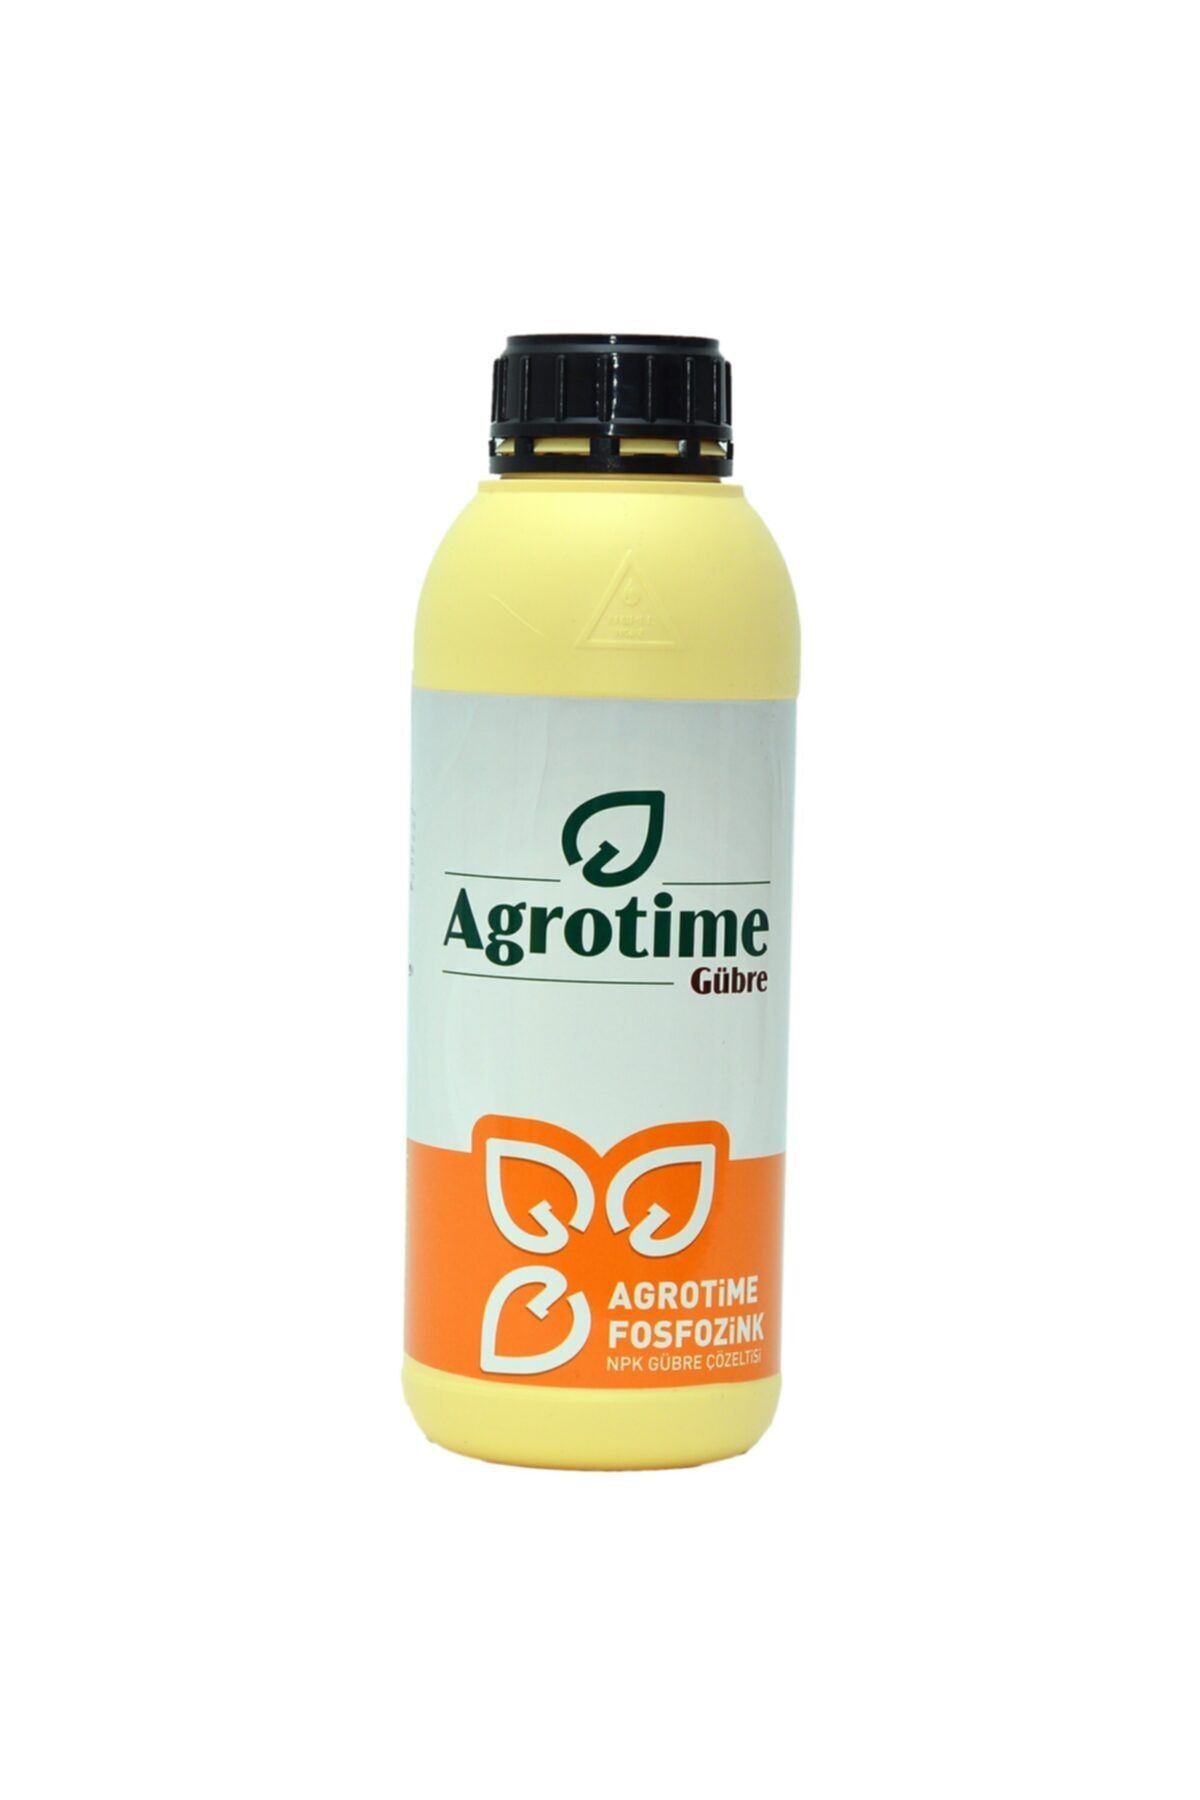 Agrotime Agrotıme Fosfozink Azot,fosfor,potasyum,bor Katkılısıvı Gübre 1 Lt